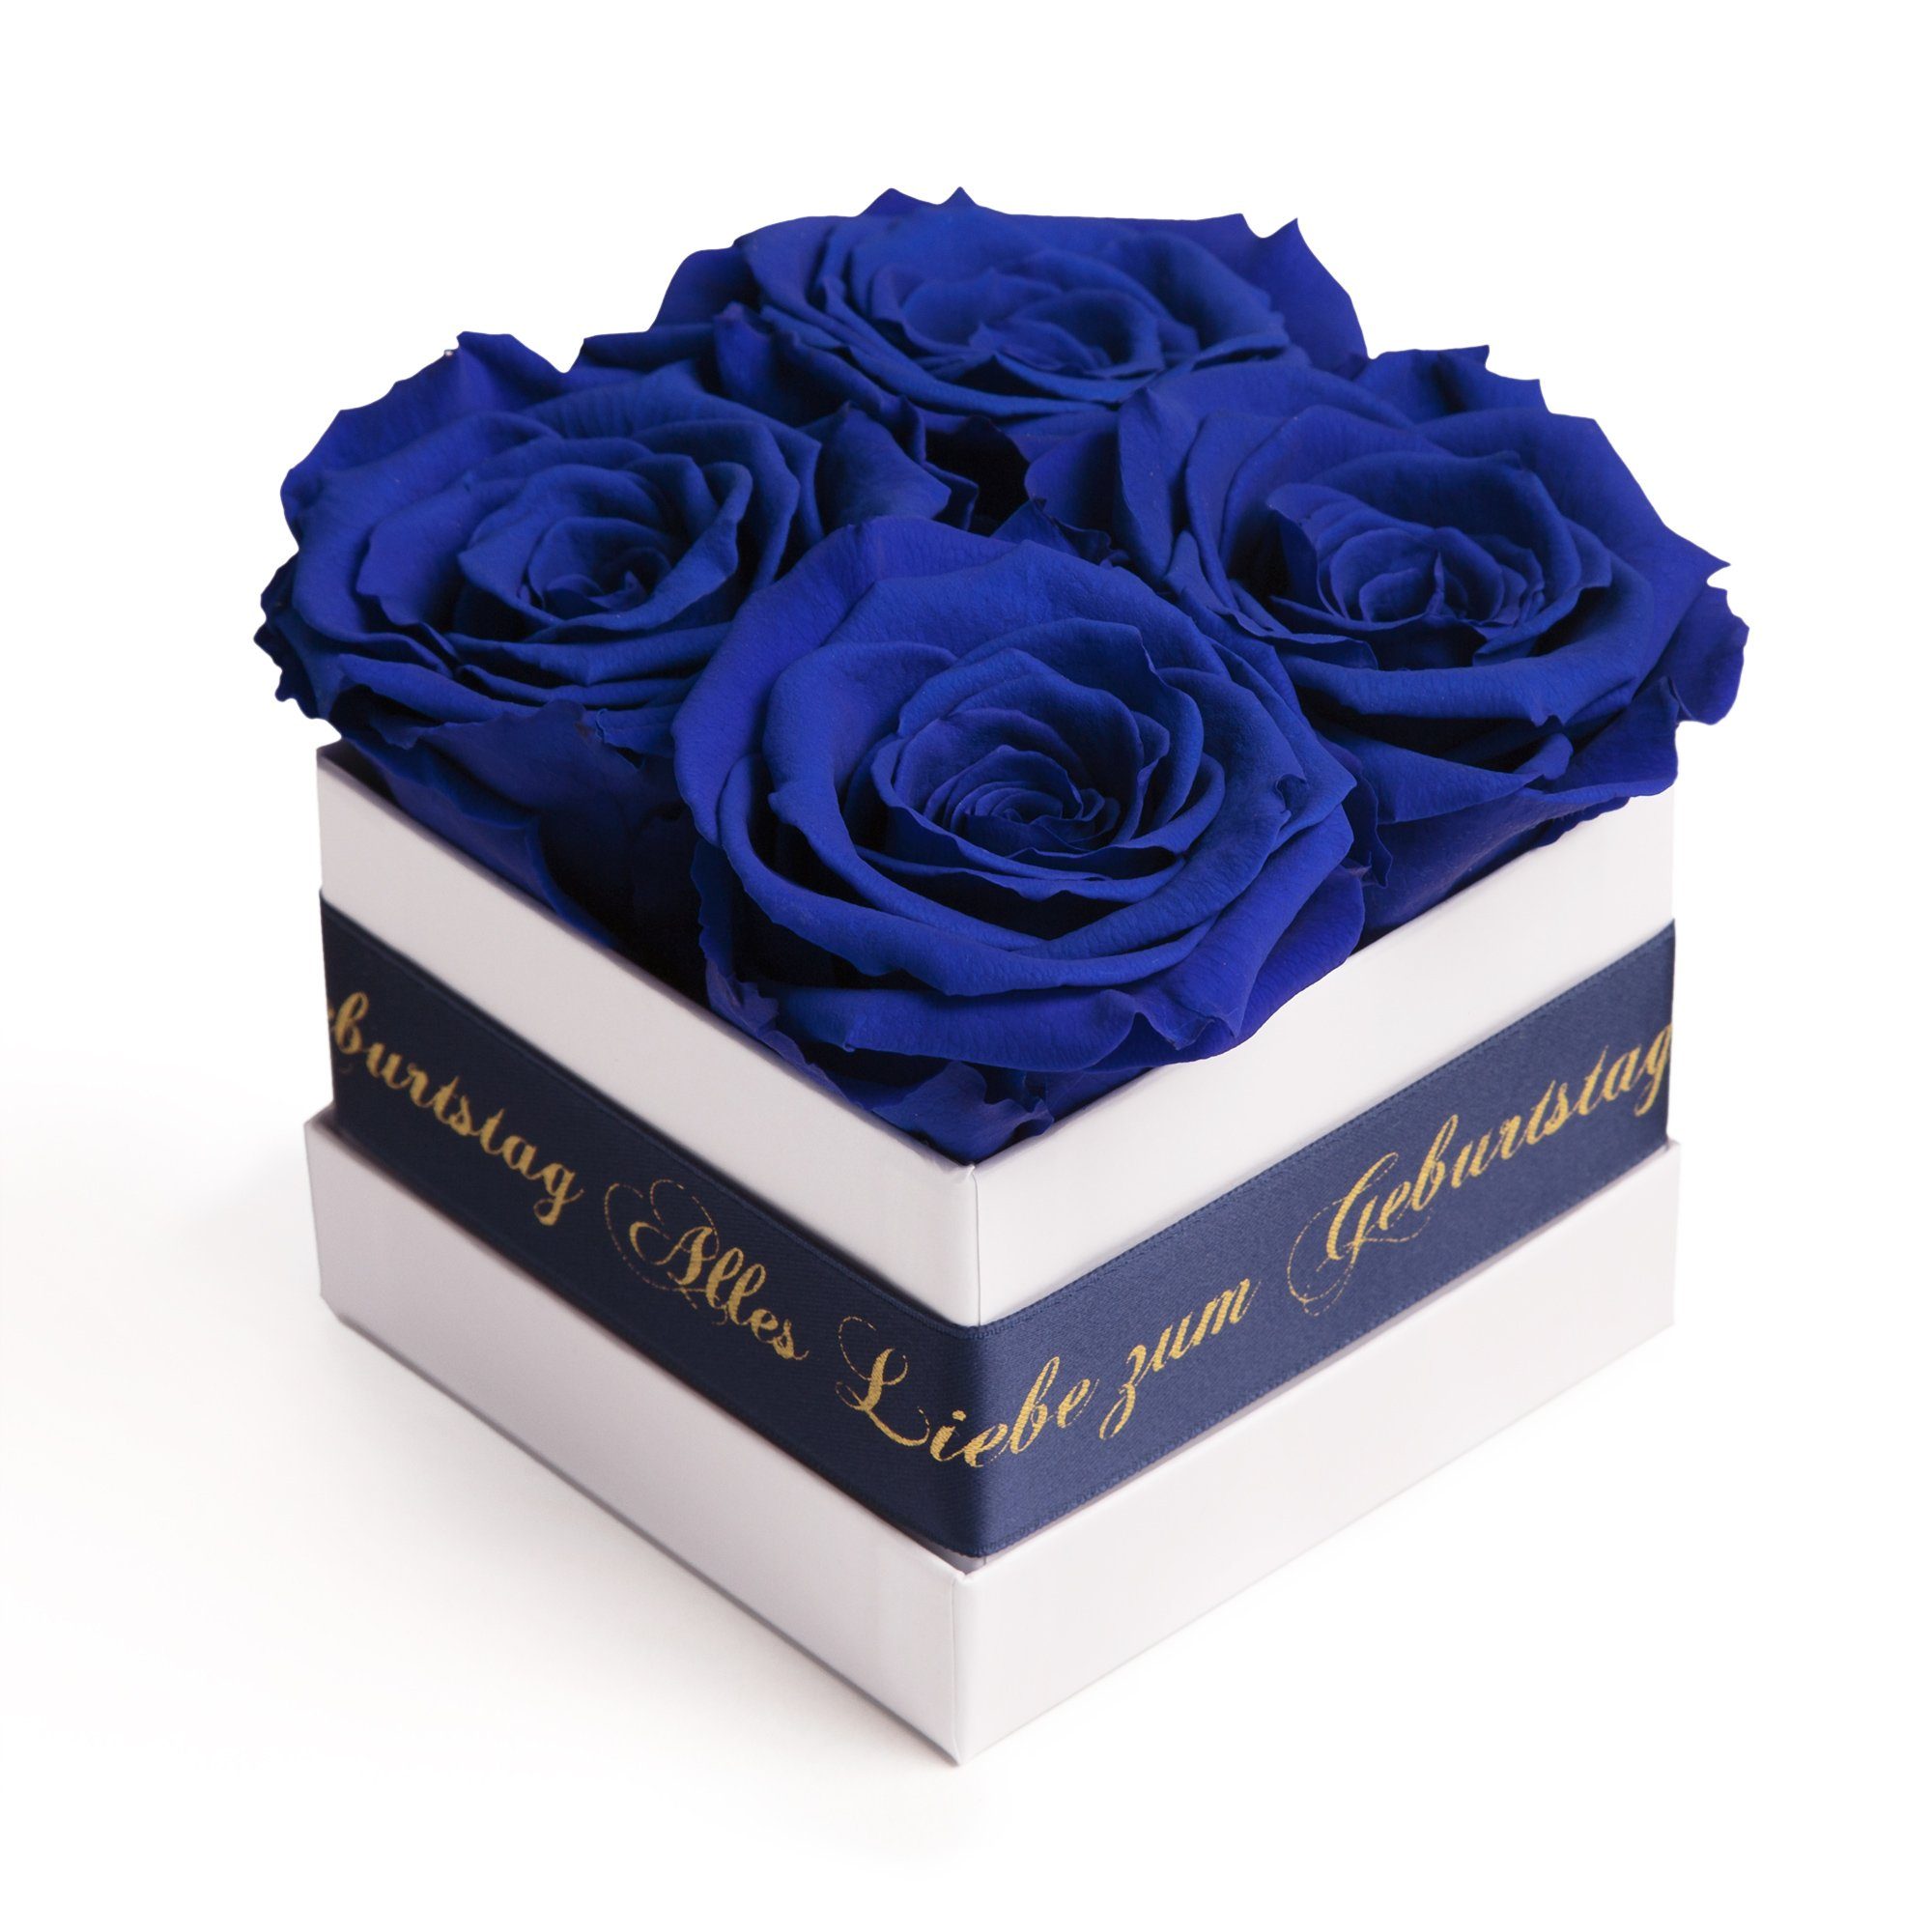 ROSEMARIE SCHULZ Heidelberg Dekoobjekt Rosenbox zum bis 3 Alles Infinity Blumen Rose Echte Geburtstag Liebe blau zu Jahre haltbar Geschenk